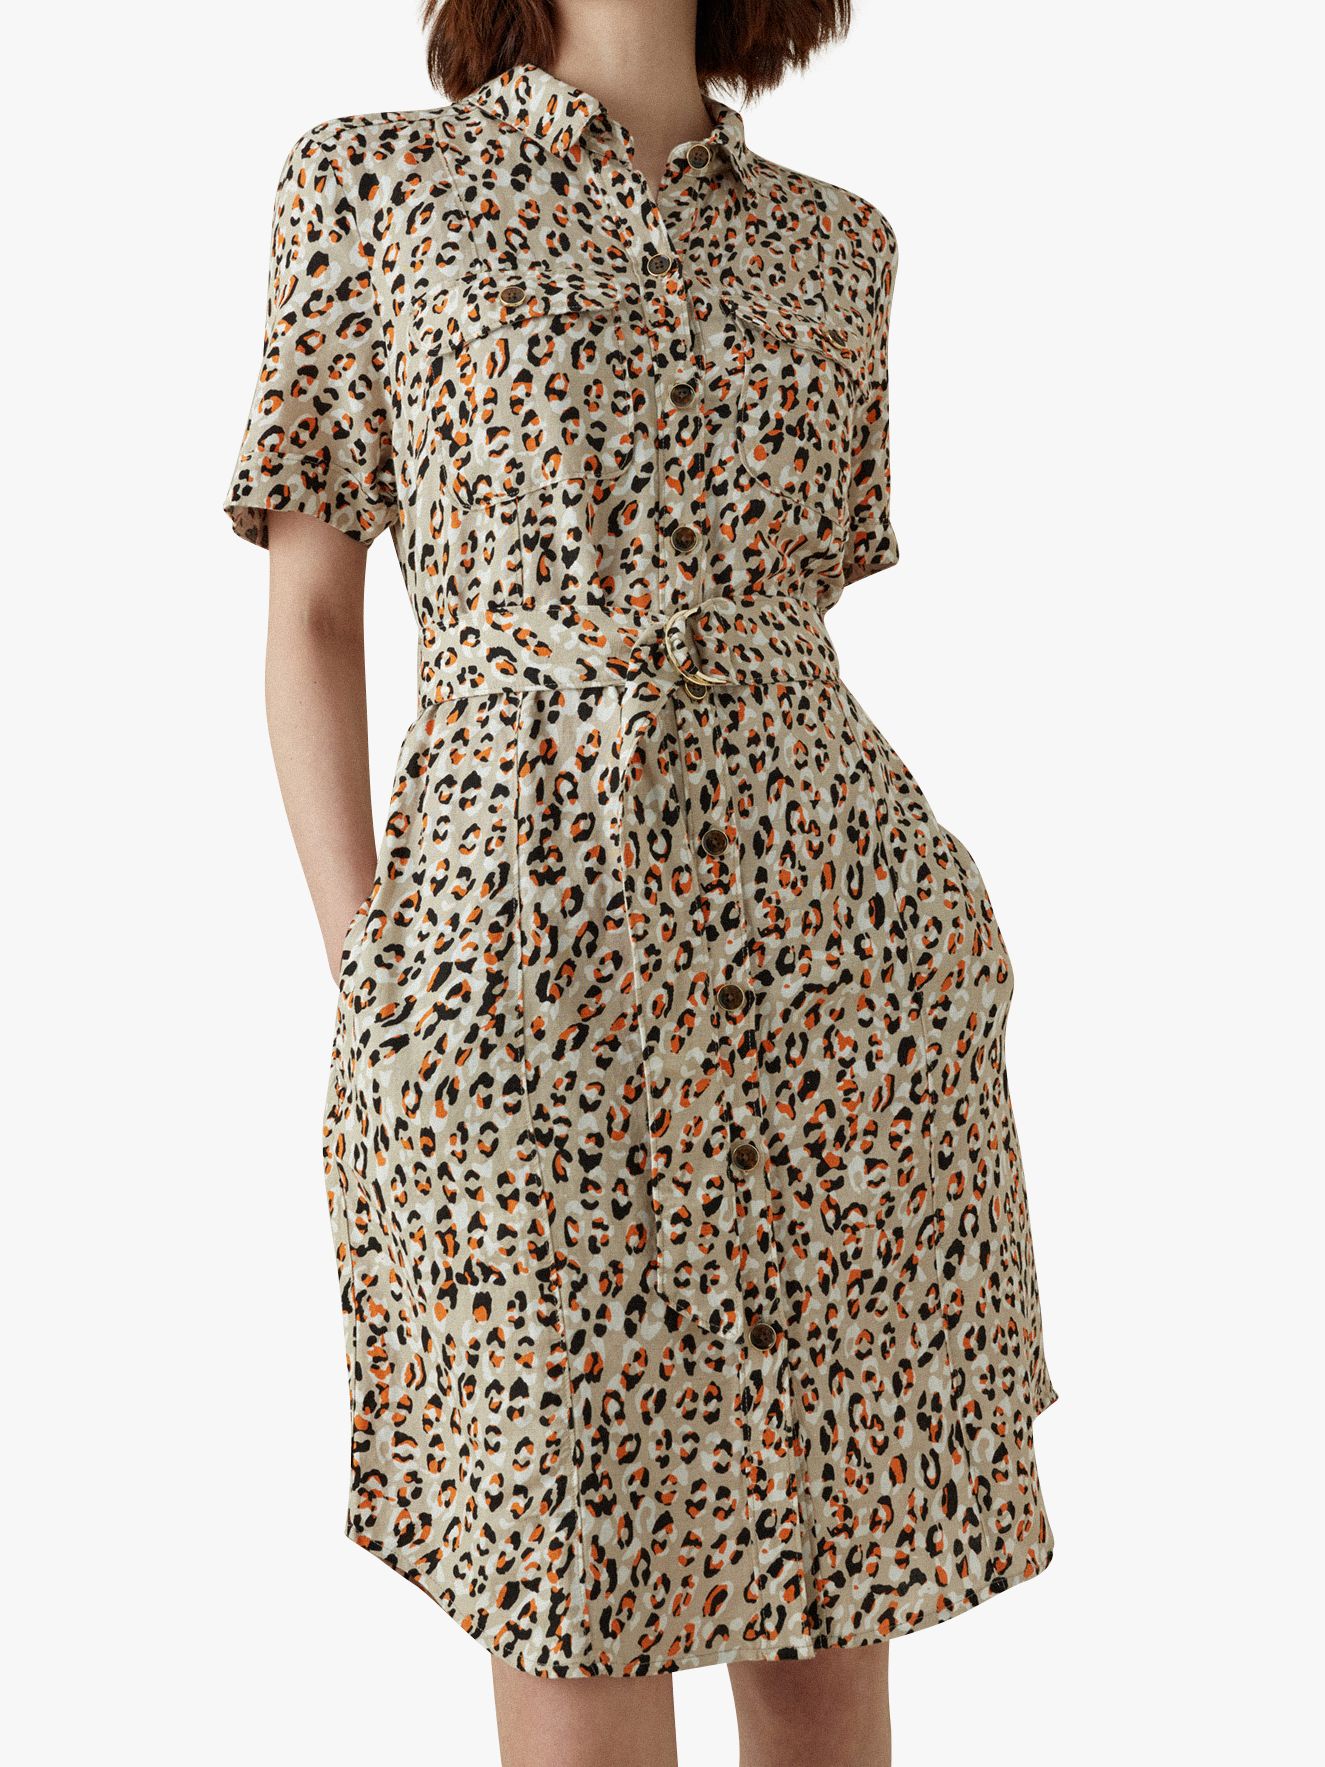  Karen  Millen  Leopard Print Shirt  Dress  Multi at John 